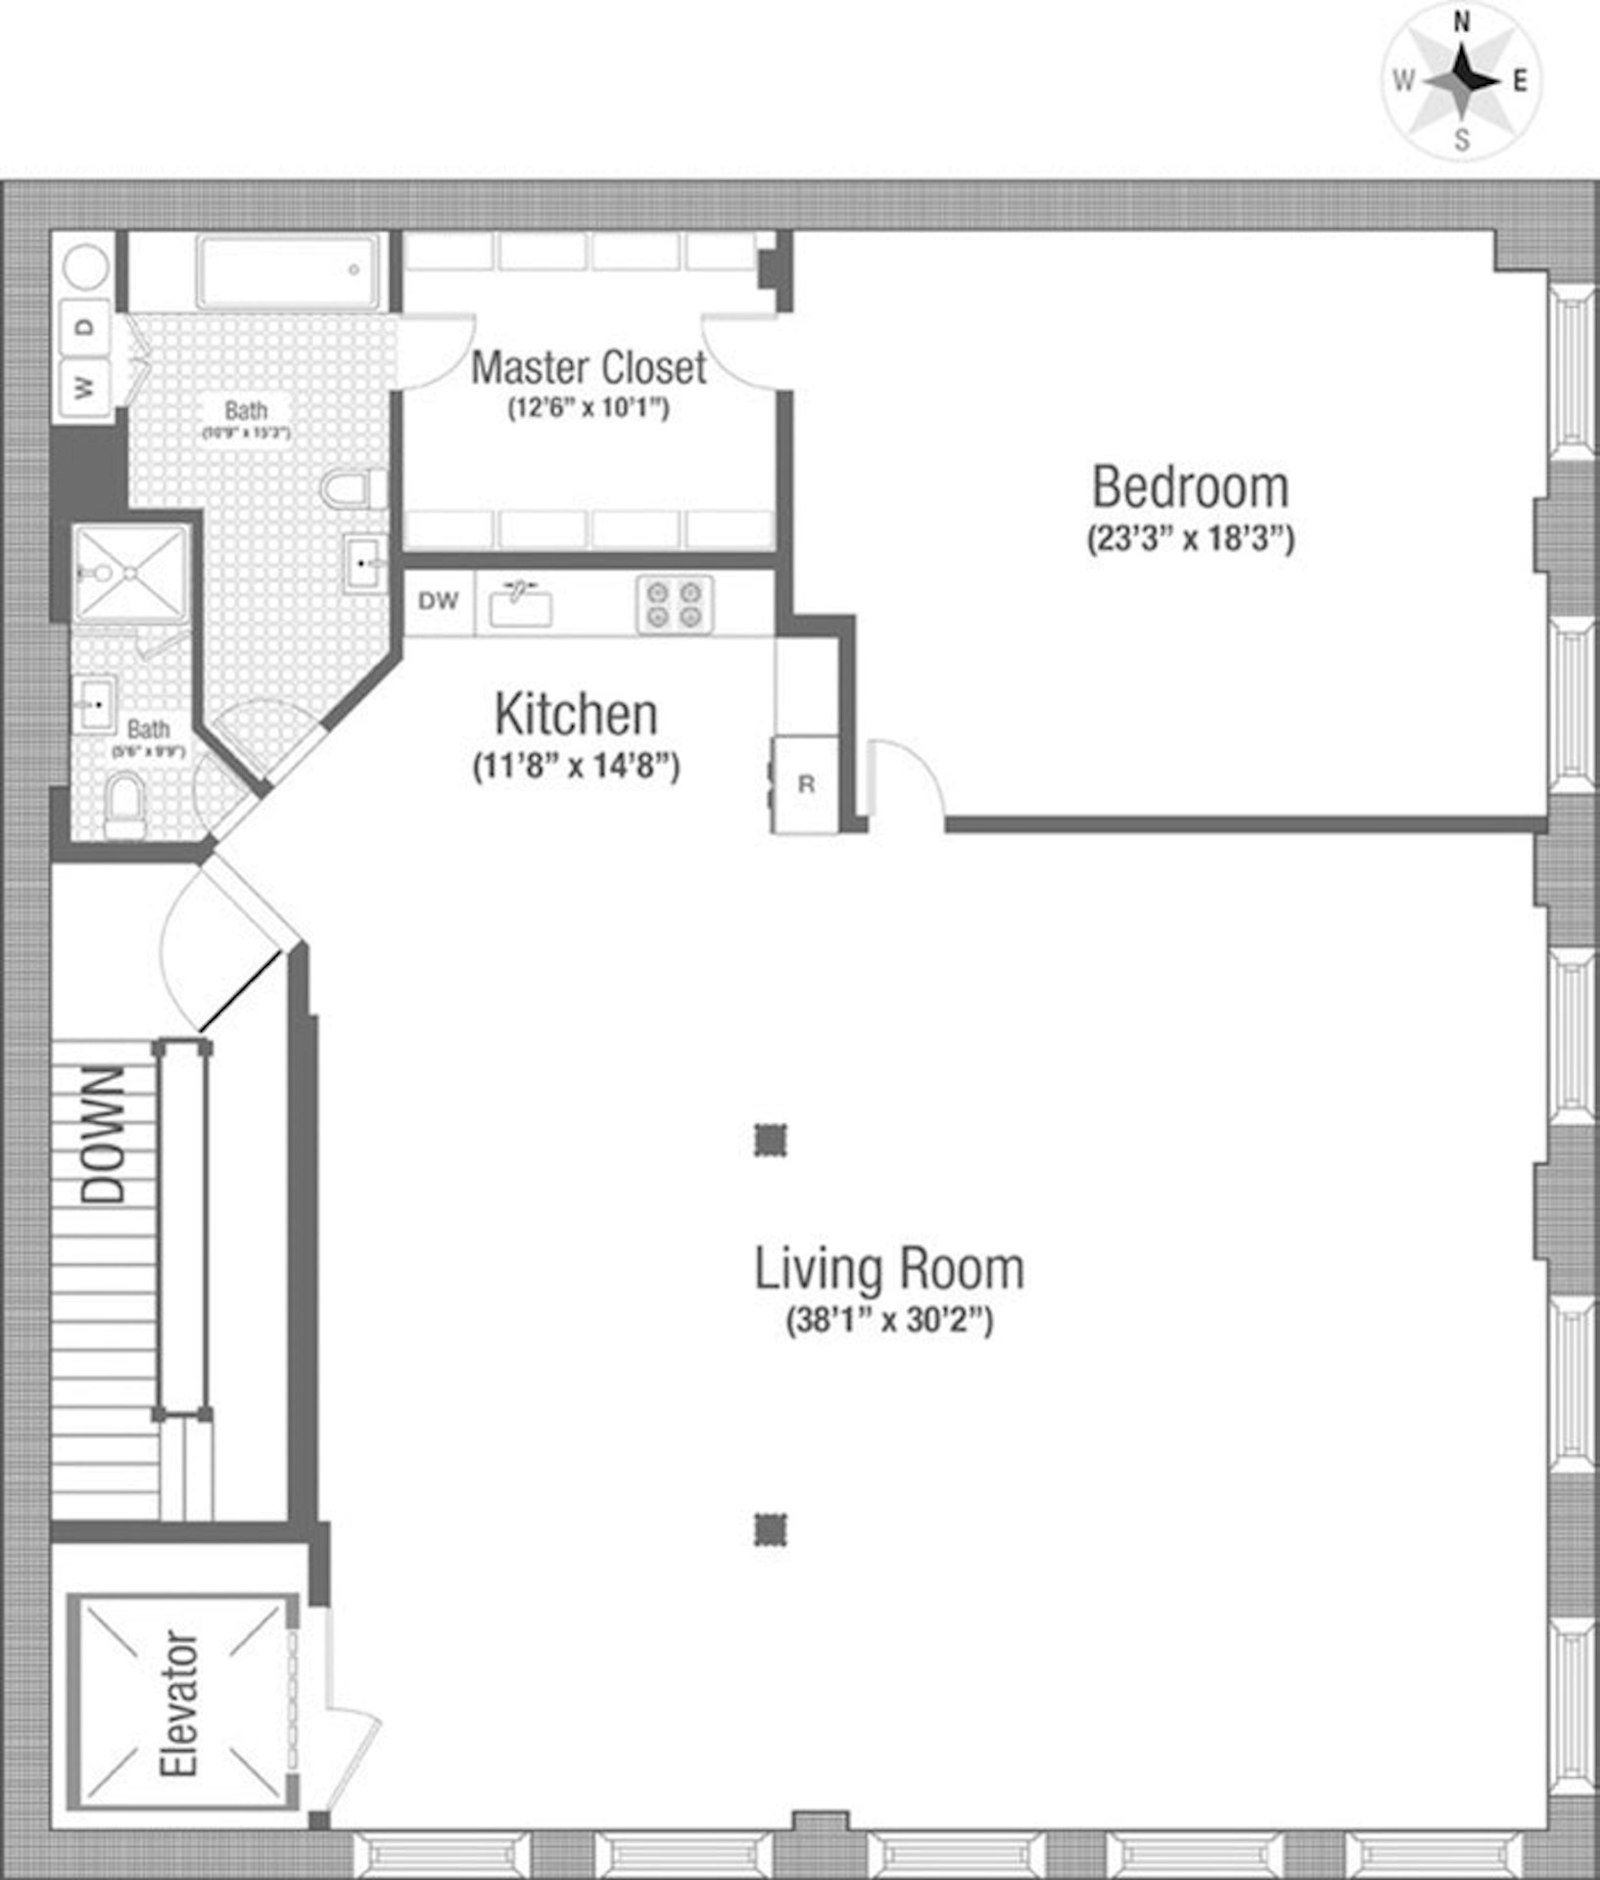 Floorplan for 117 Hudson Street